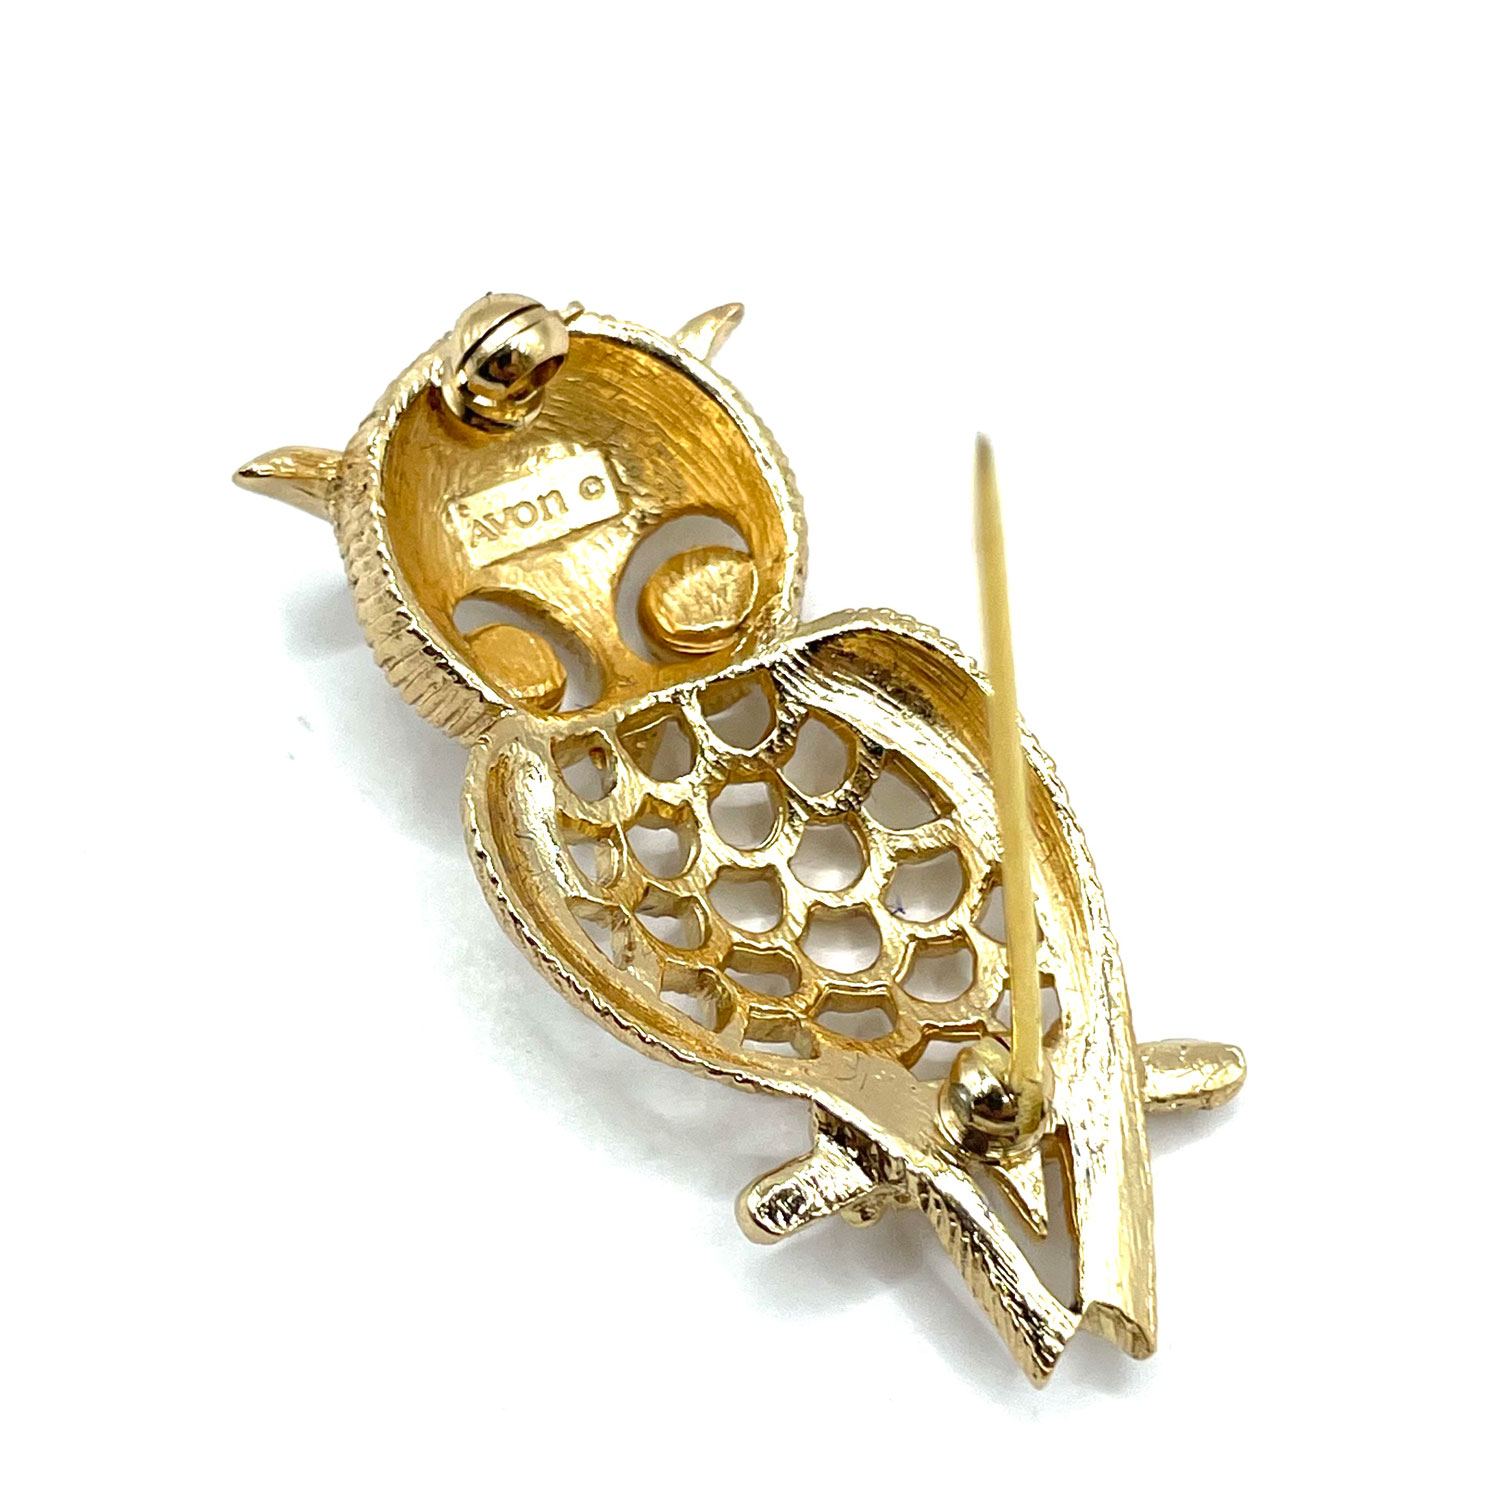 Avon owl brooch